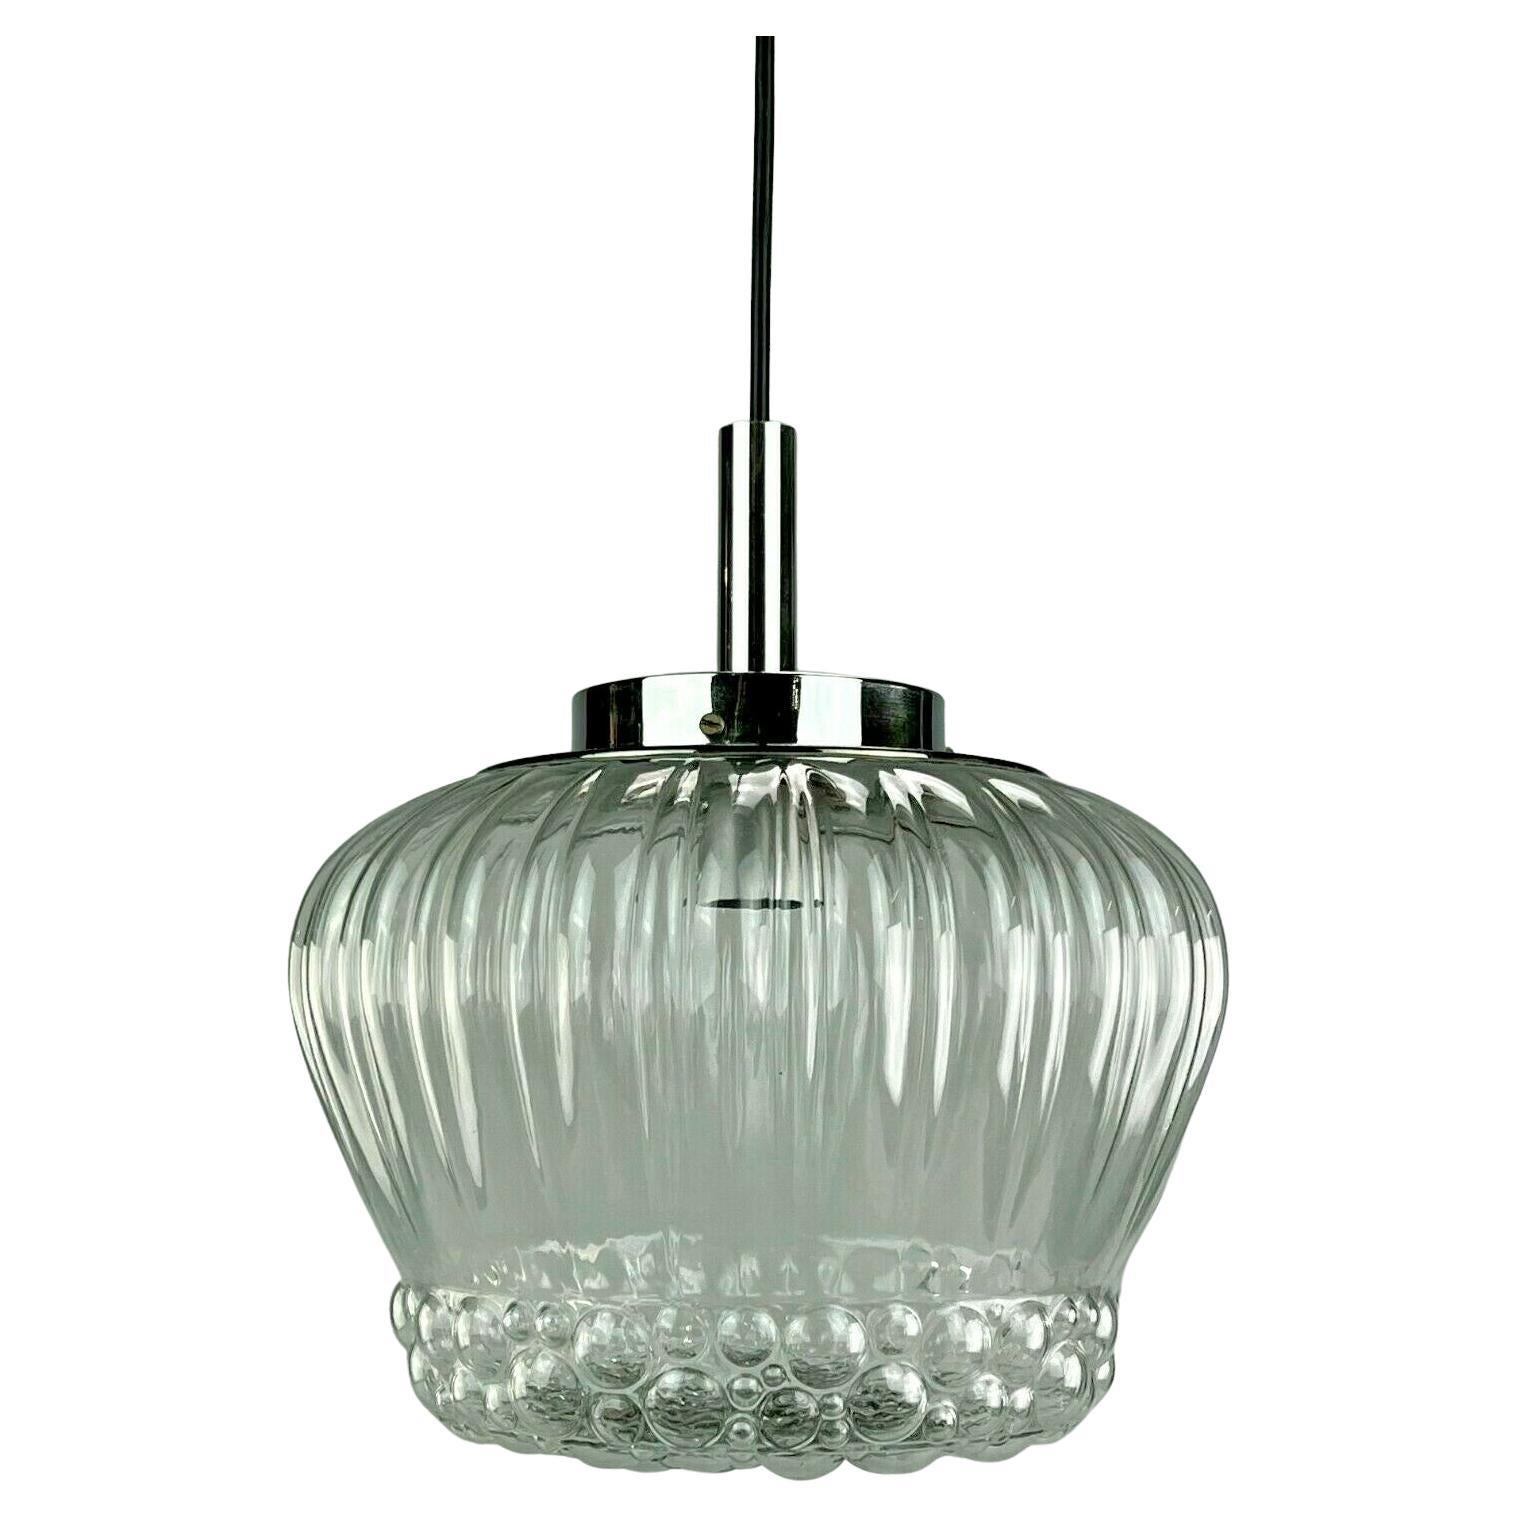 Lampe suspendue des années 60 et 70 Lampe à boules Lampe en verre chromé bullé Design de l'ère spatiale